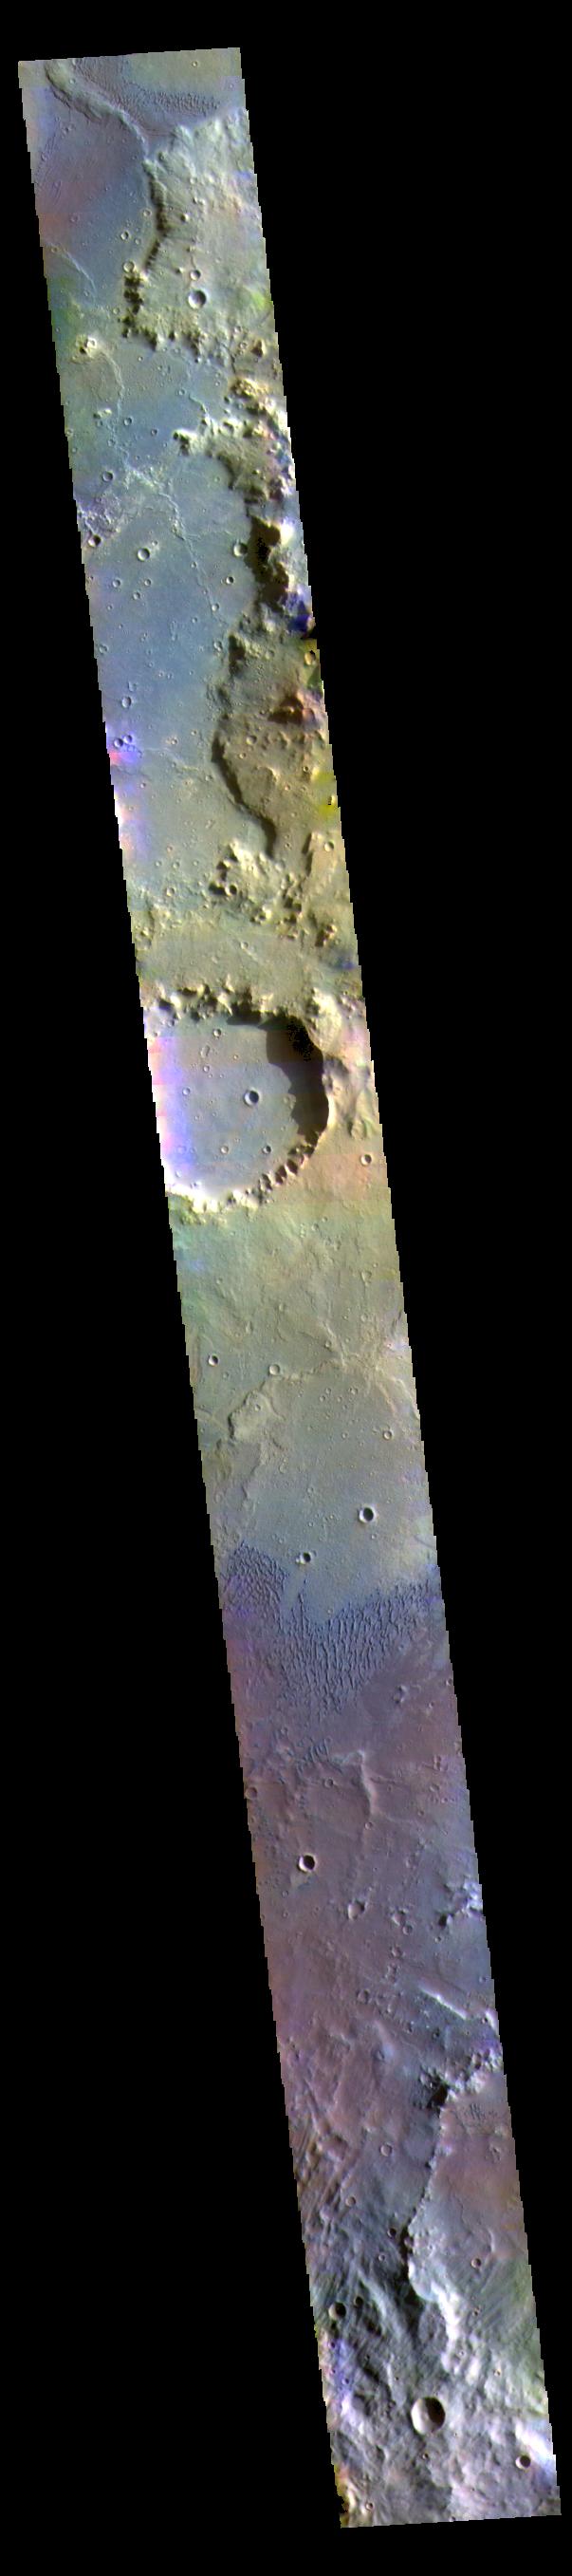 PIA23253: Herschel Crater - False Color